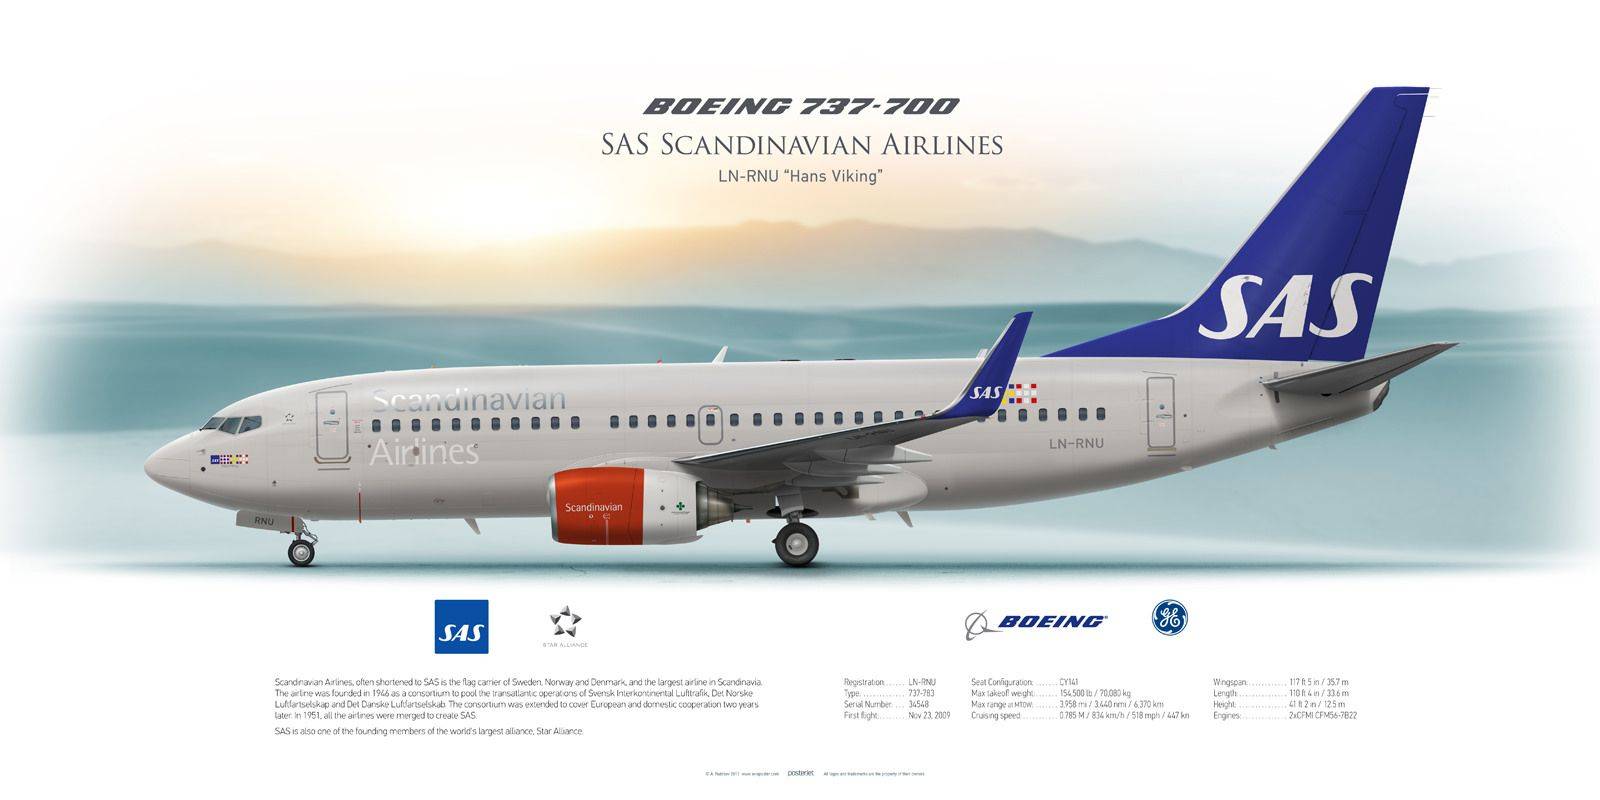 Sas scandinavian airlines - отзывы пассажиров 2017-2018 про авиакомпанию сас - скандинавские авиалинии